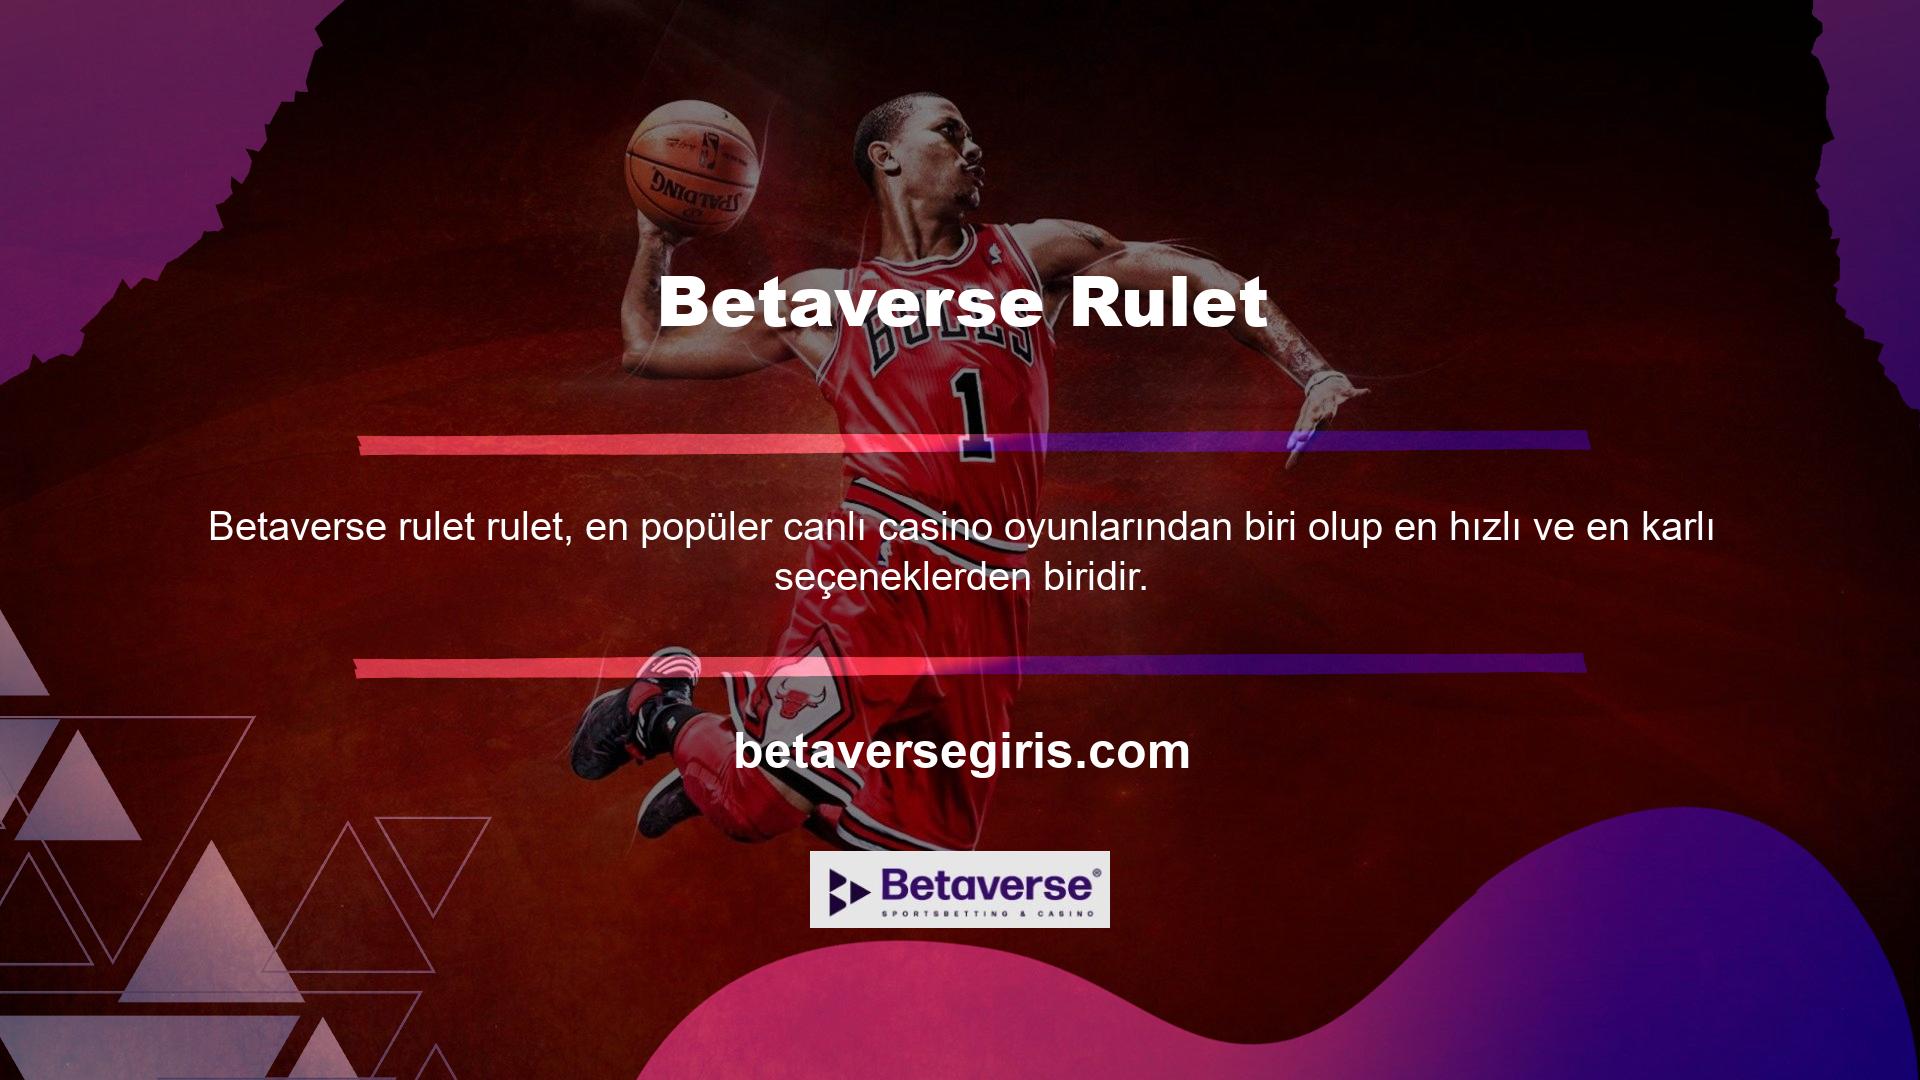 Betaverse web sitesi farklı rulet masaları ve kullanıcılardan oluşan bir koleksiyondur